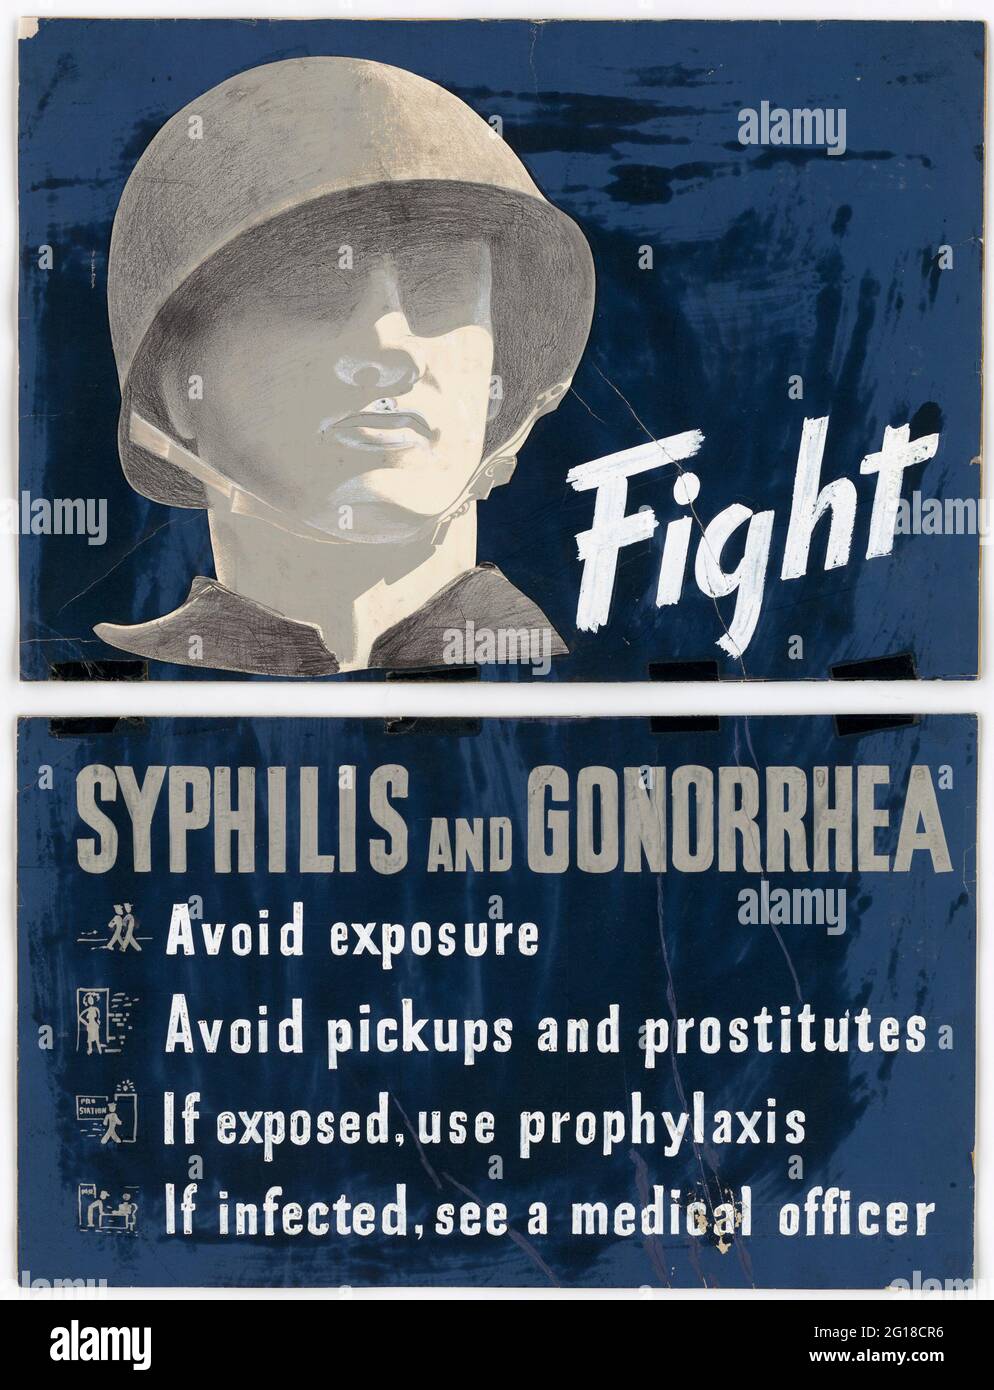 Ein altes amerikanisches Plakat aus dem 3. Weltkrieg, das Soldaten vor den Gefahren der VD (Geschlechtskrankheit) warnt Stockfoto